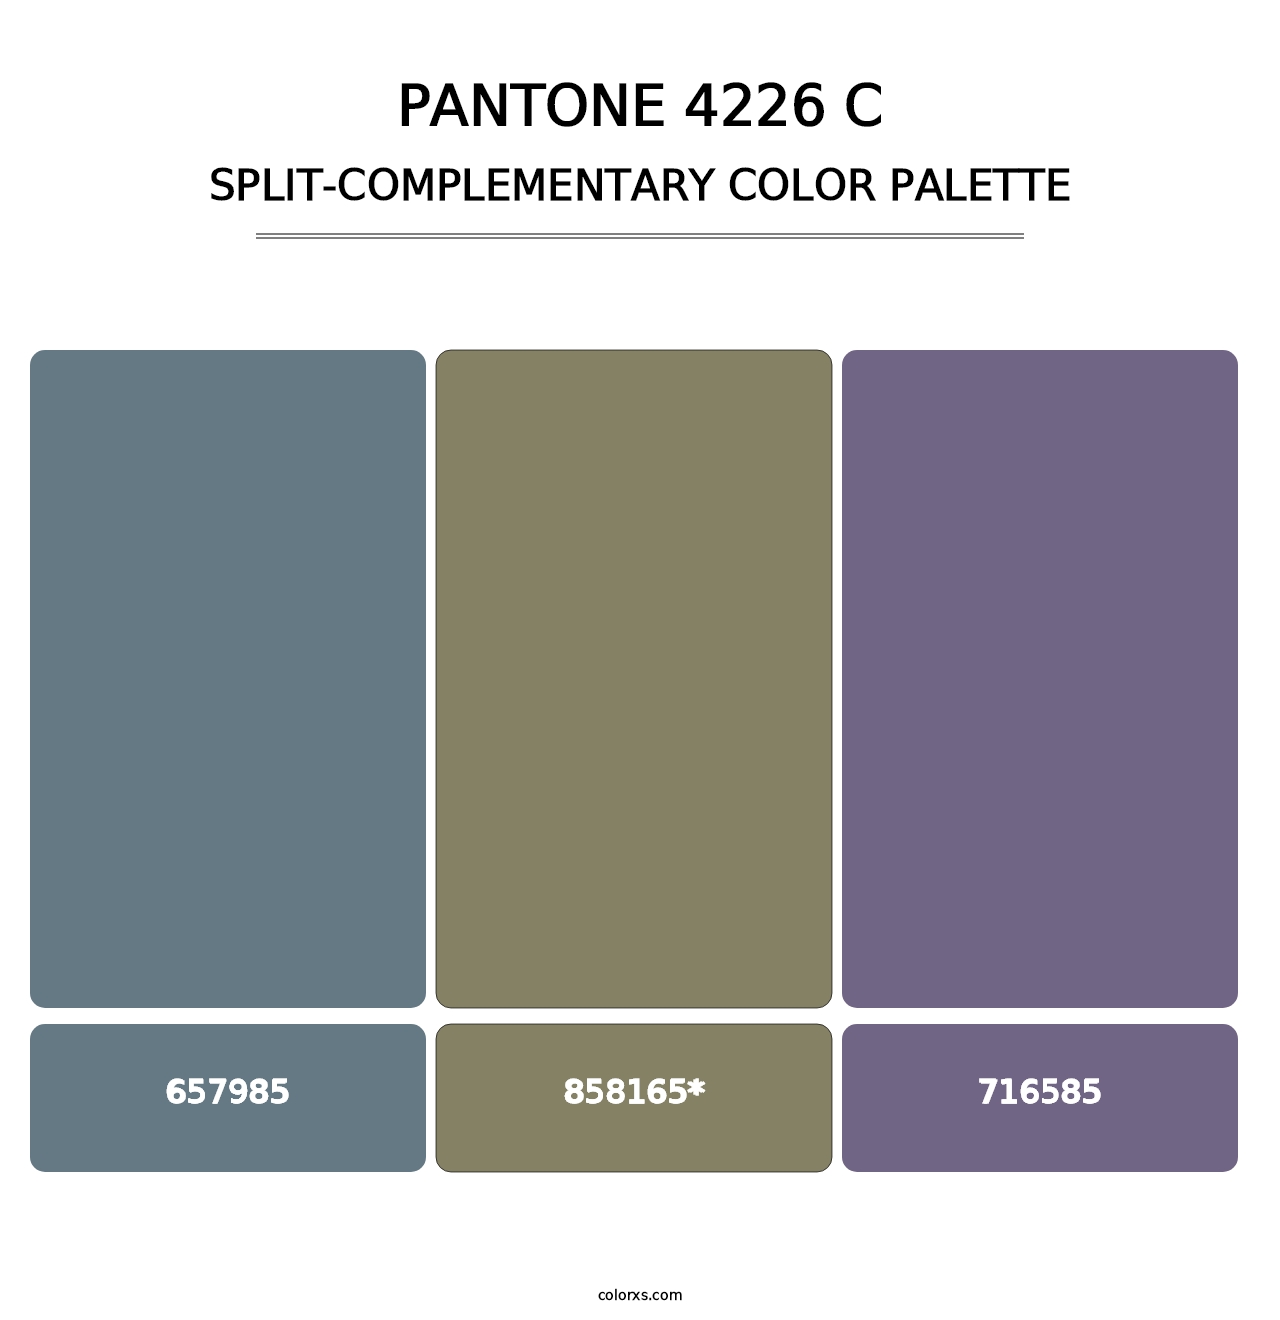 PANTONE 4226 C - Split-Complementary Color Palette